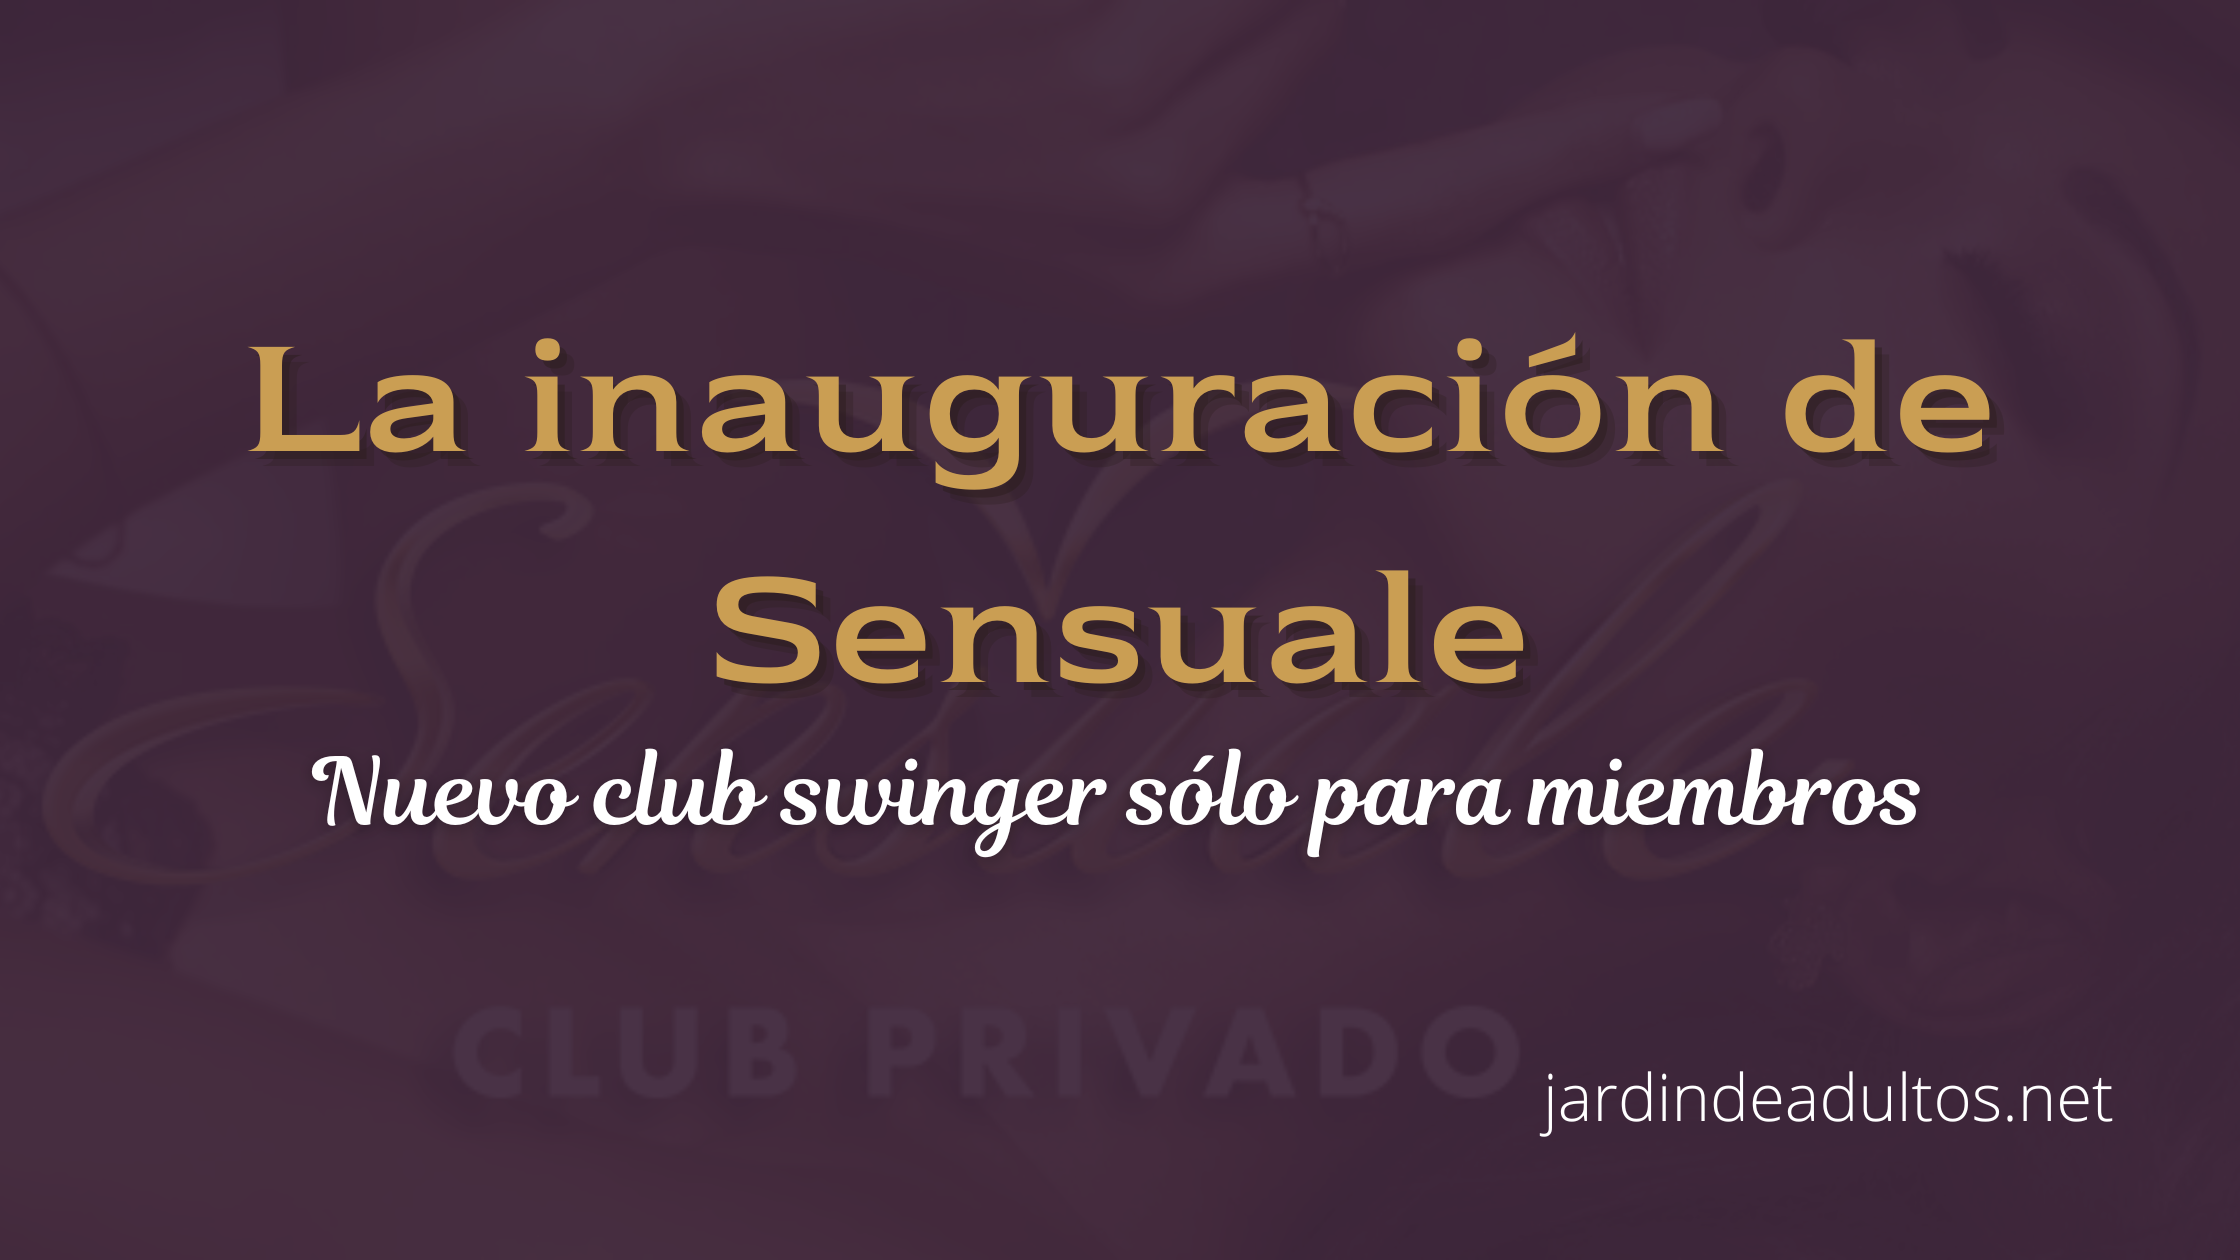 Sensuale Nuevo club swinger privado en CDMX -Jardín de adultos